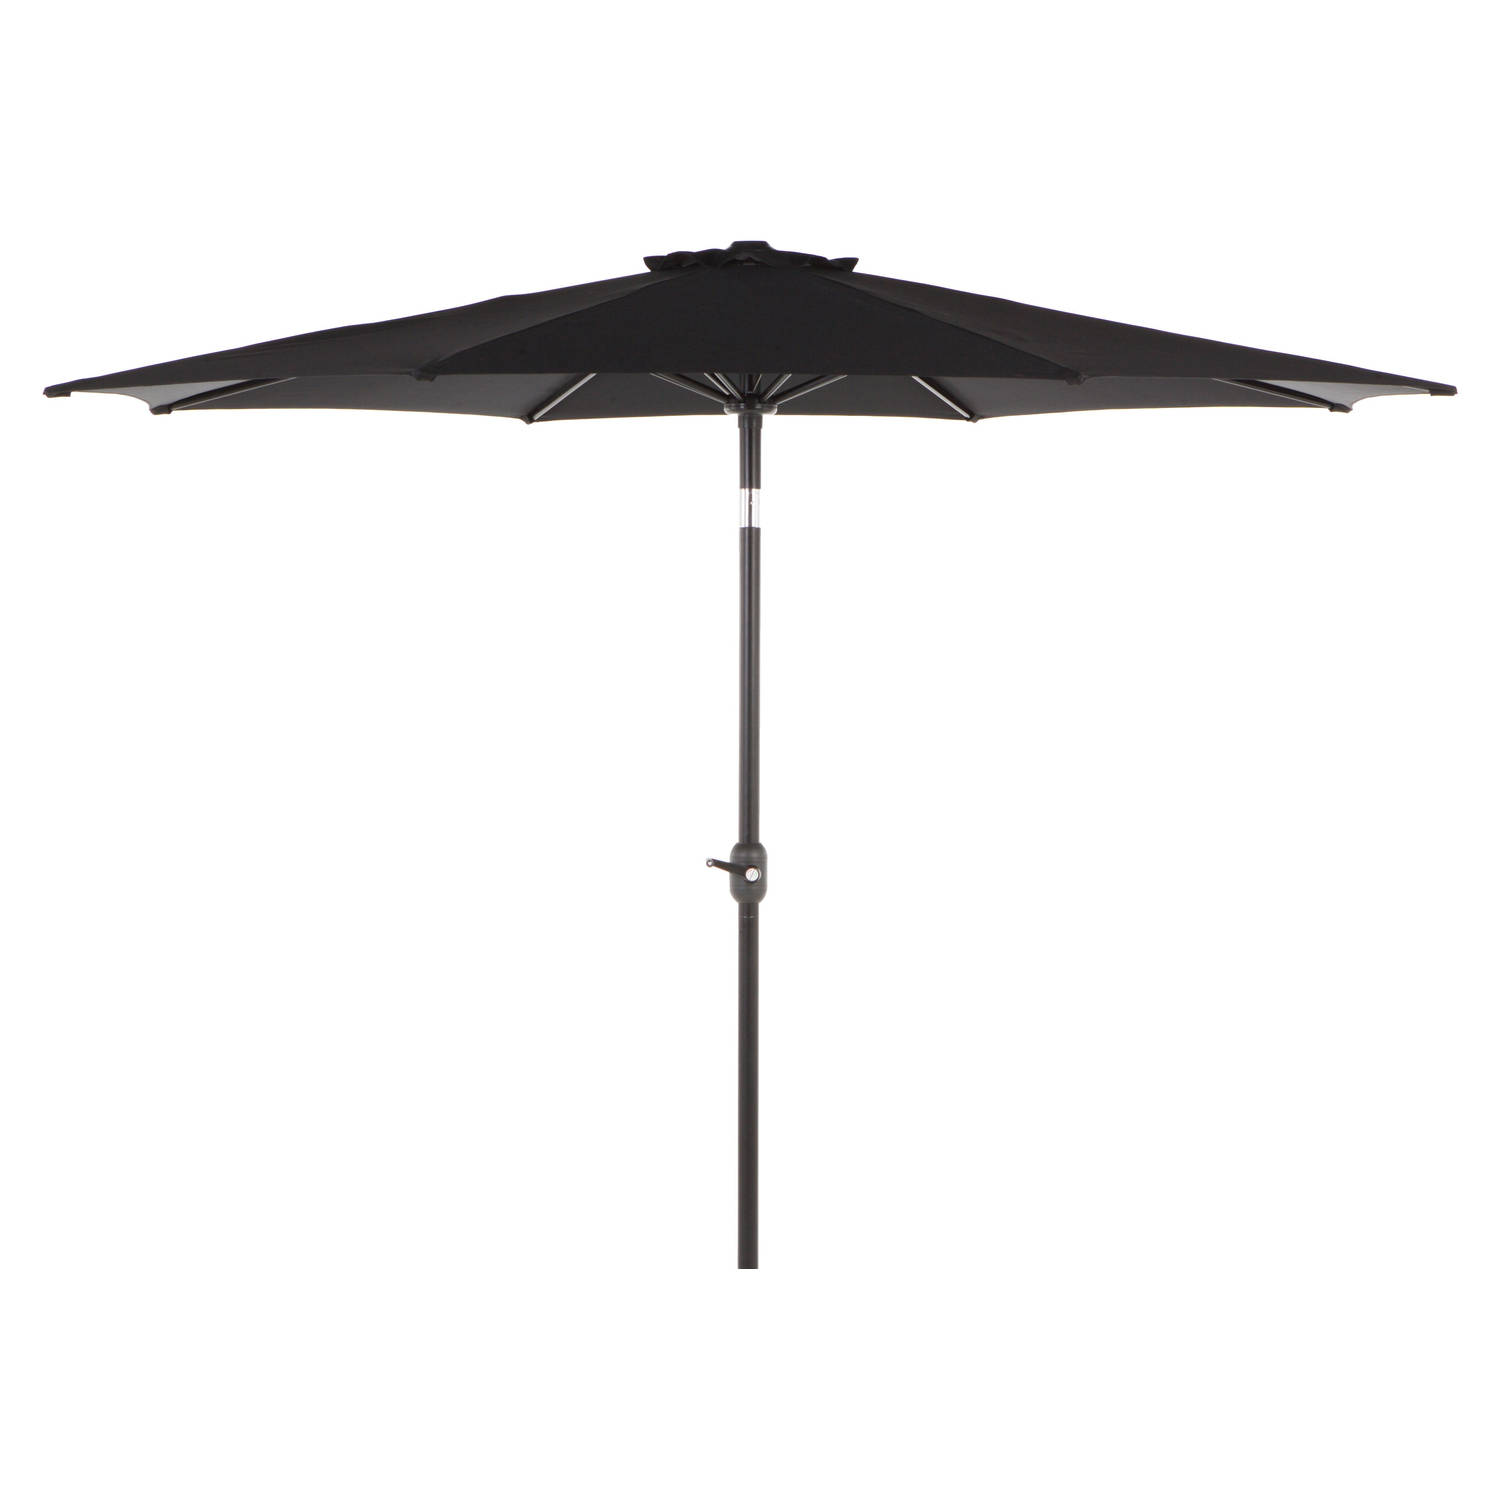 Surla zonnescherm parasol met tandwiel, kantelt ø3 M zwart/zwart.